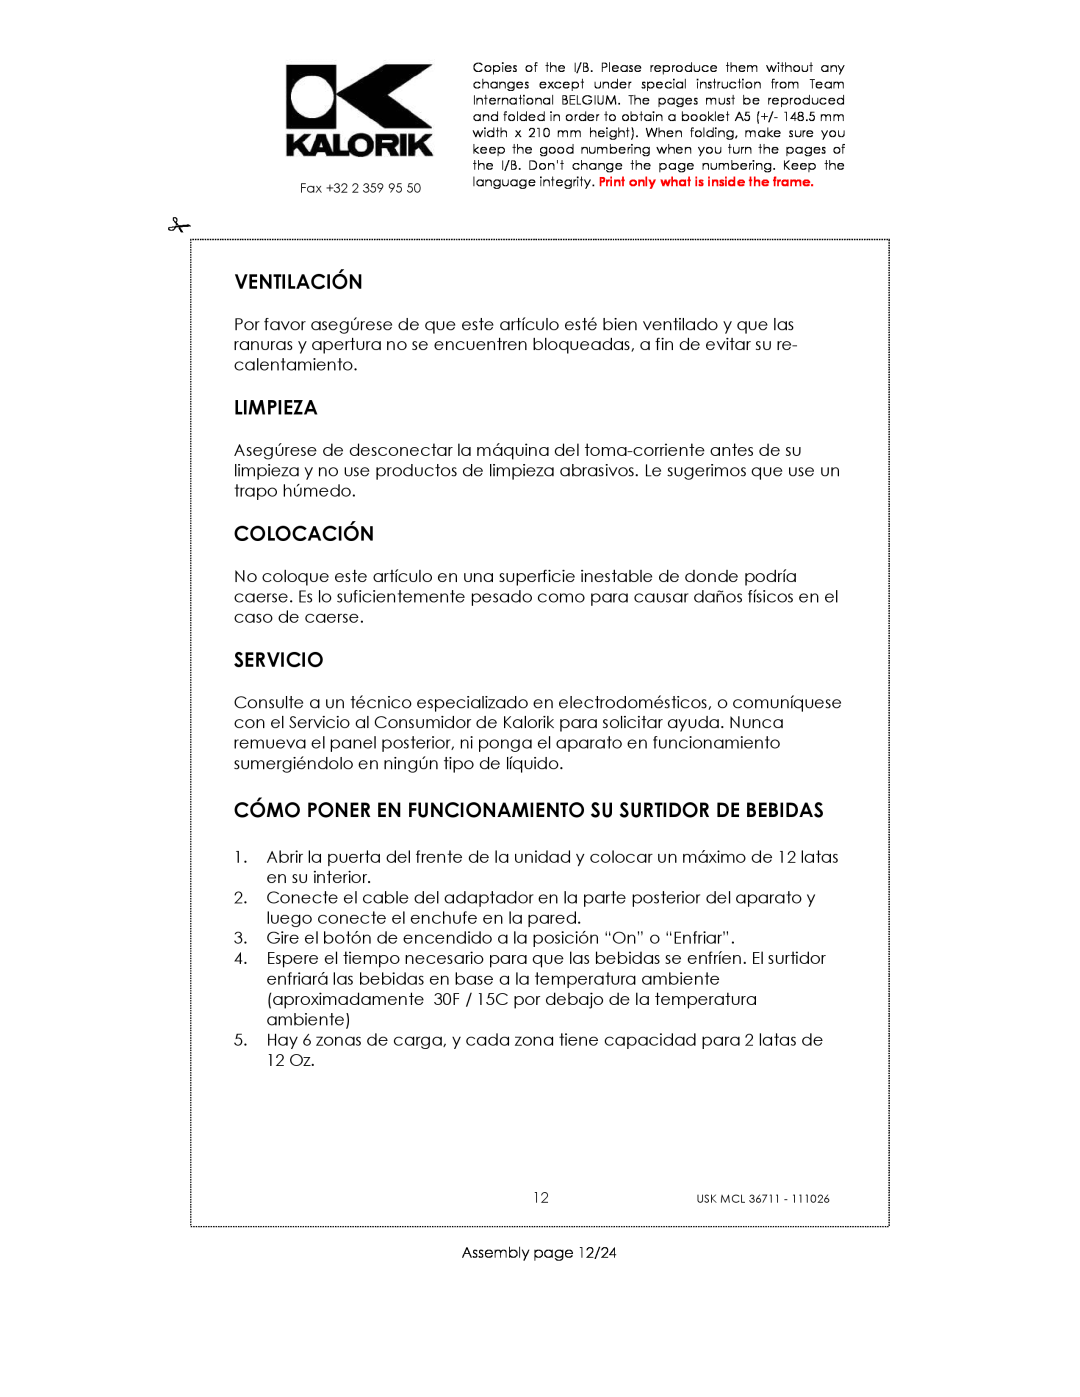 Kalorik USK MCL 36711 manual Ventilación, Limpieza, Colocación, Servicio, Assembly page 12/24 